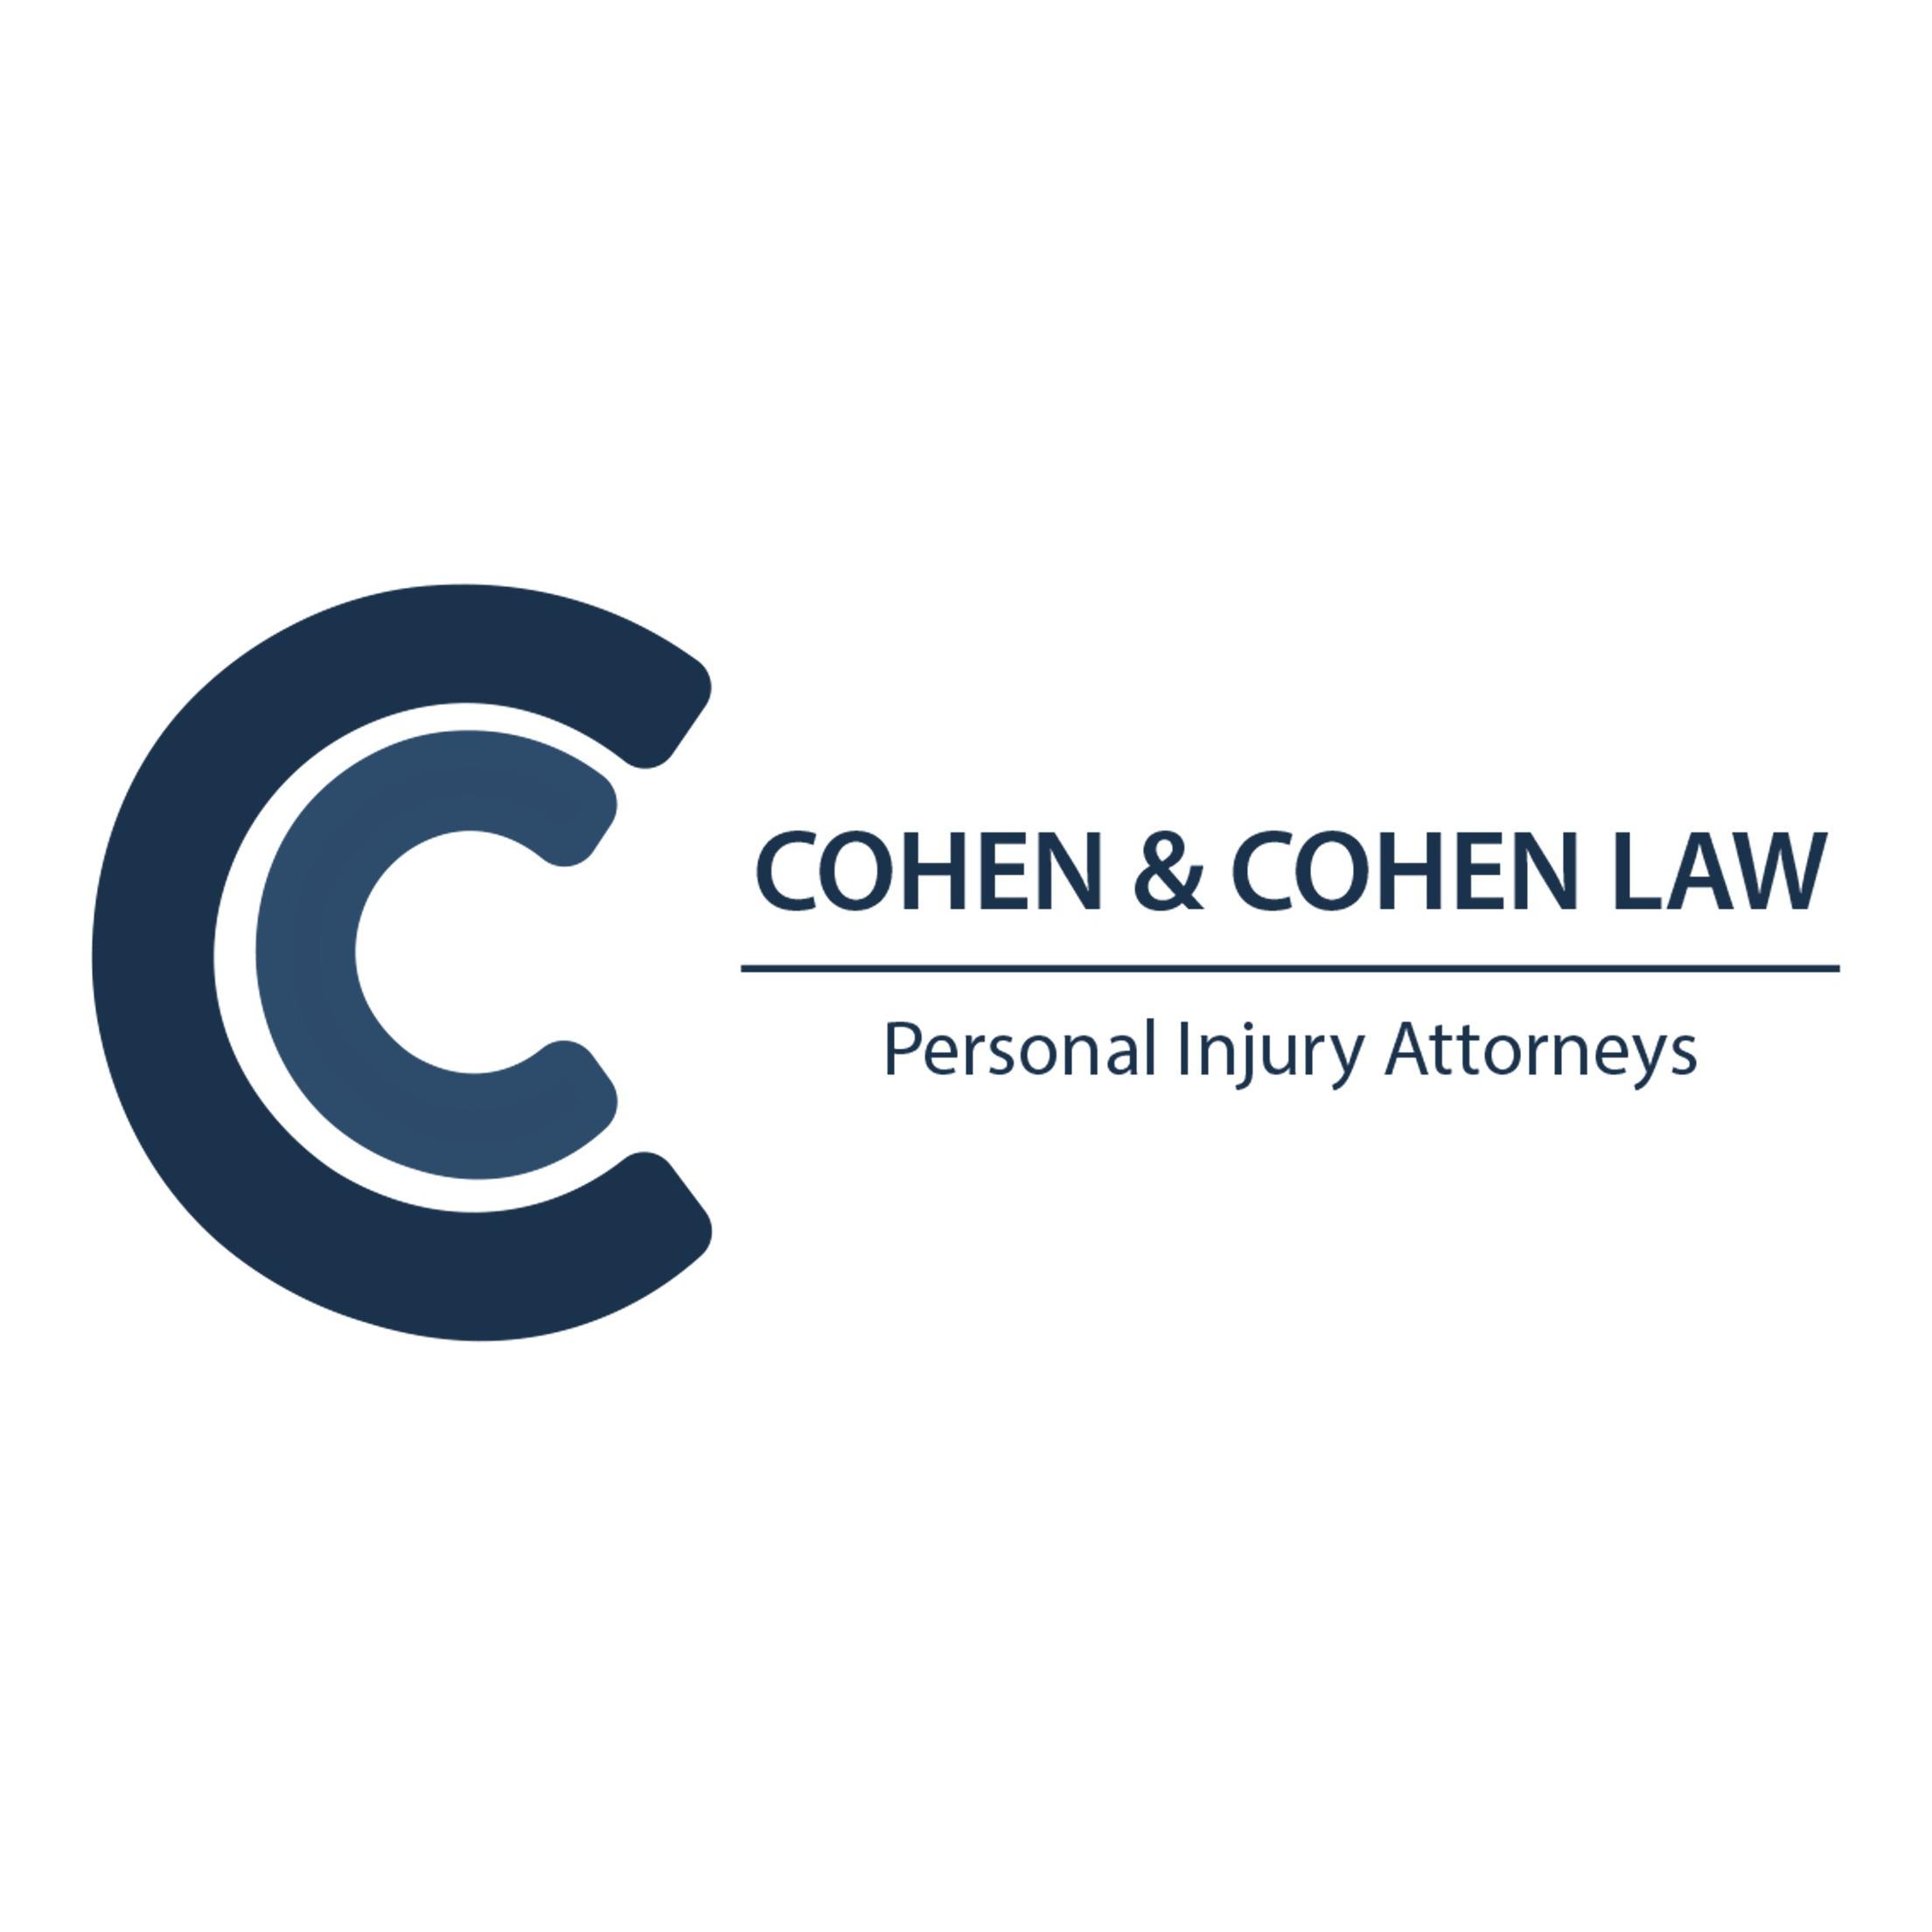 Personal Injury Attorney Miami Florida 33131 Cohen and Cohen Law Miami (305)532-1771